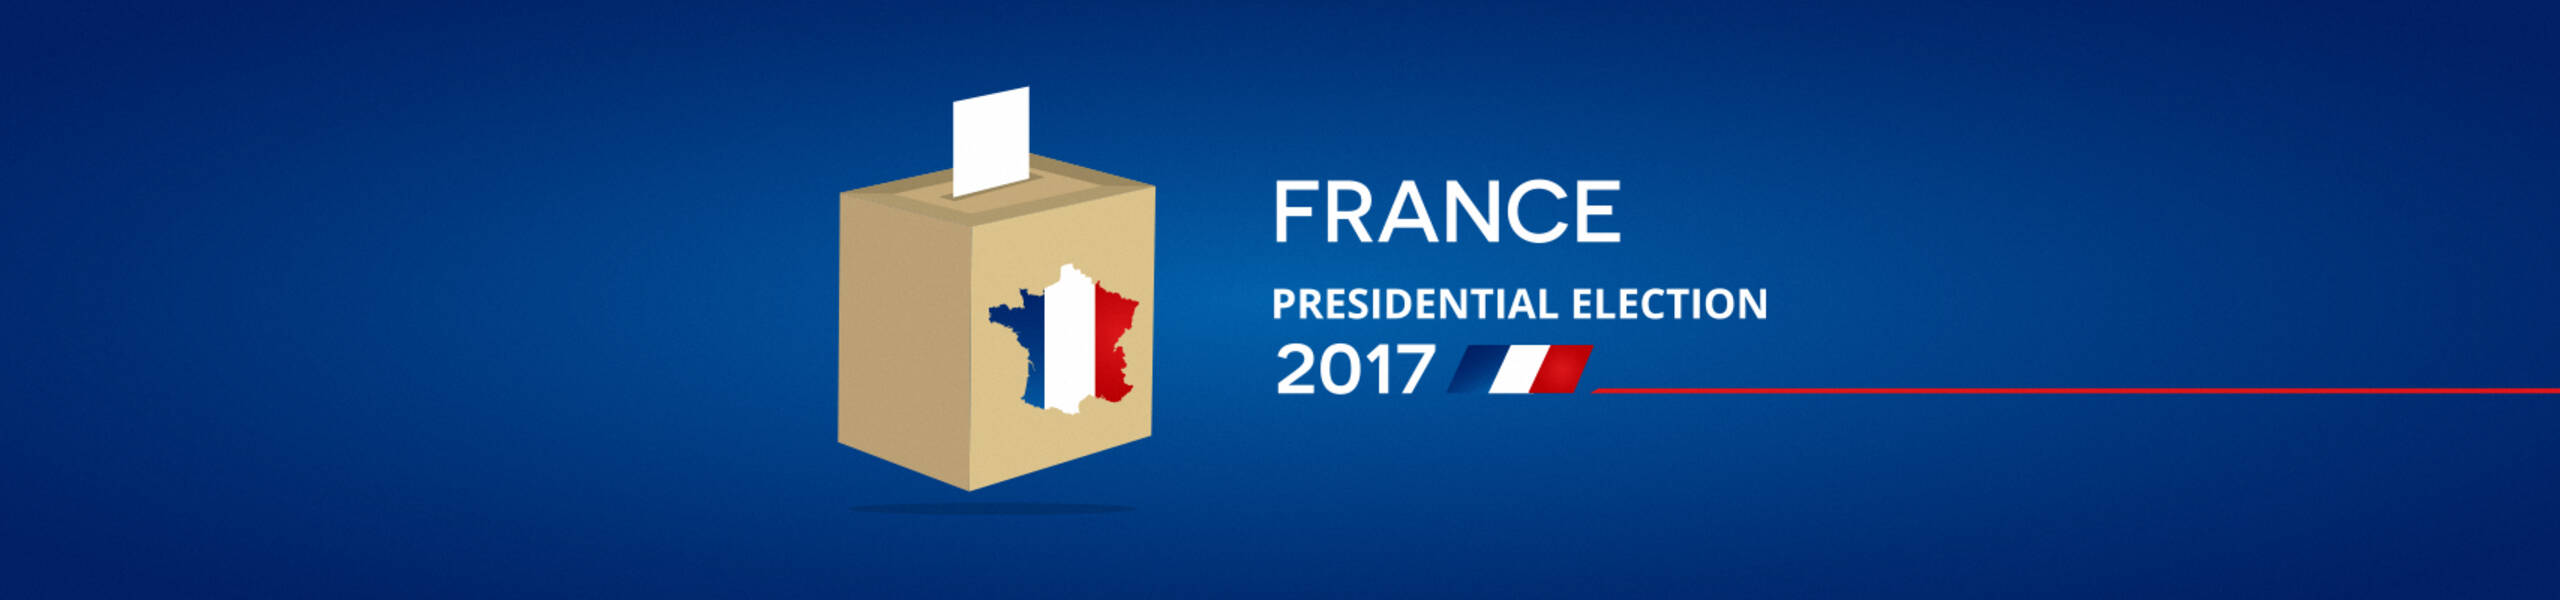 Atenção: eleições presidenciais francesas